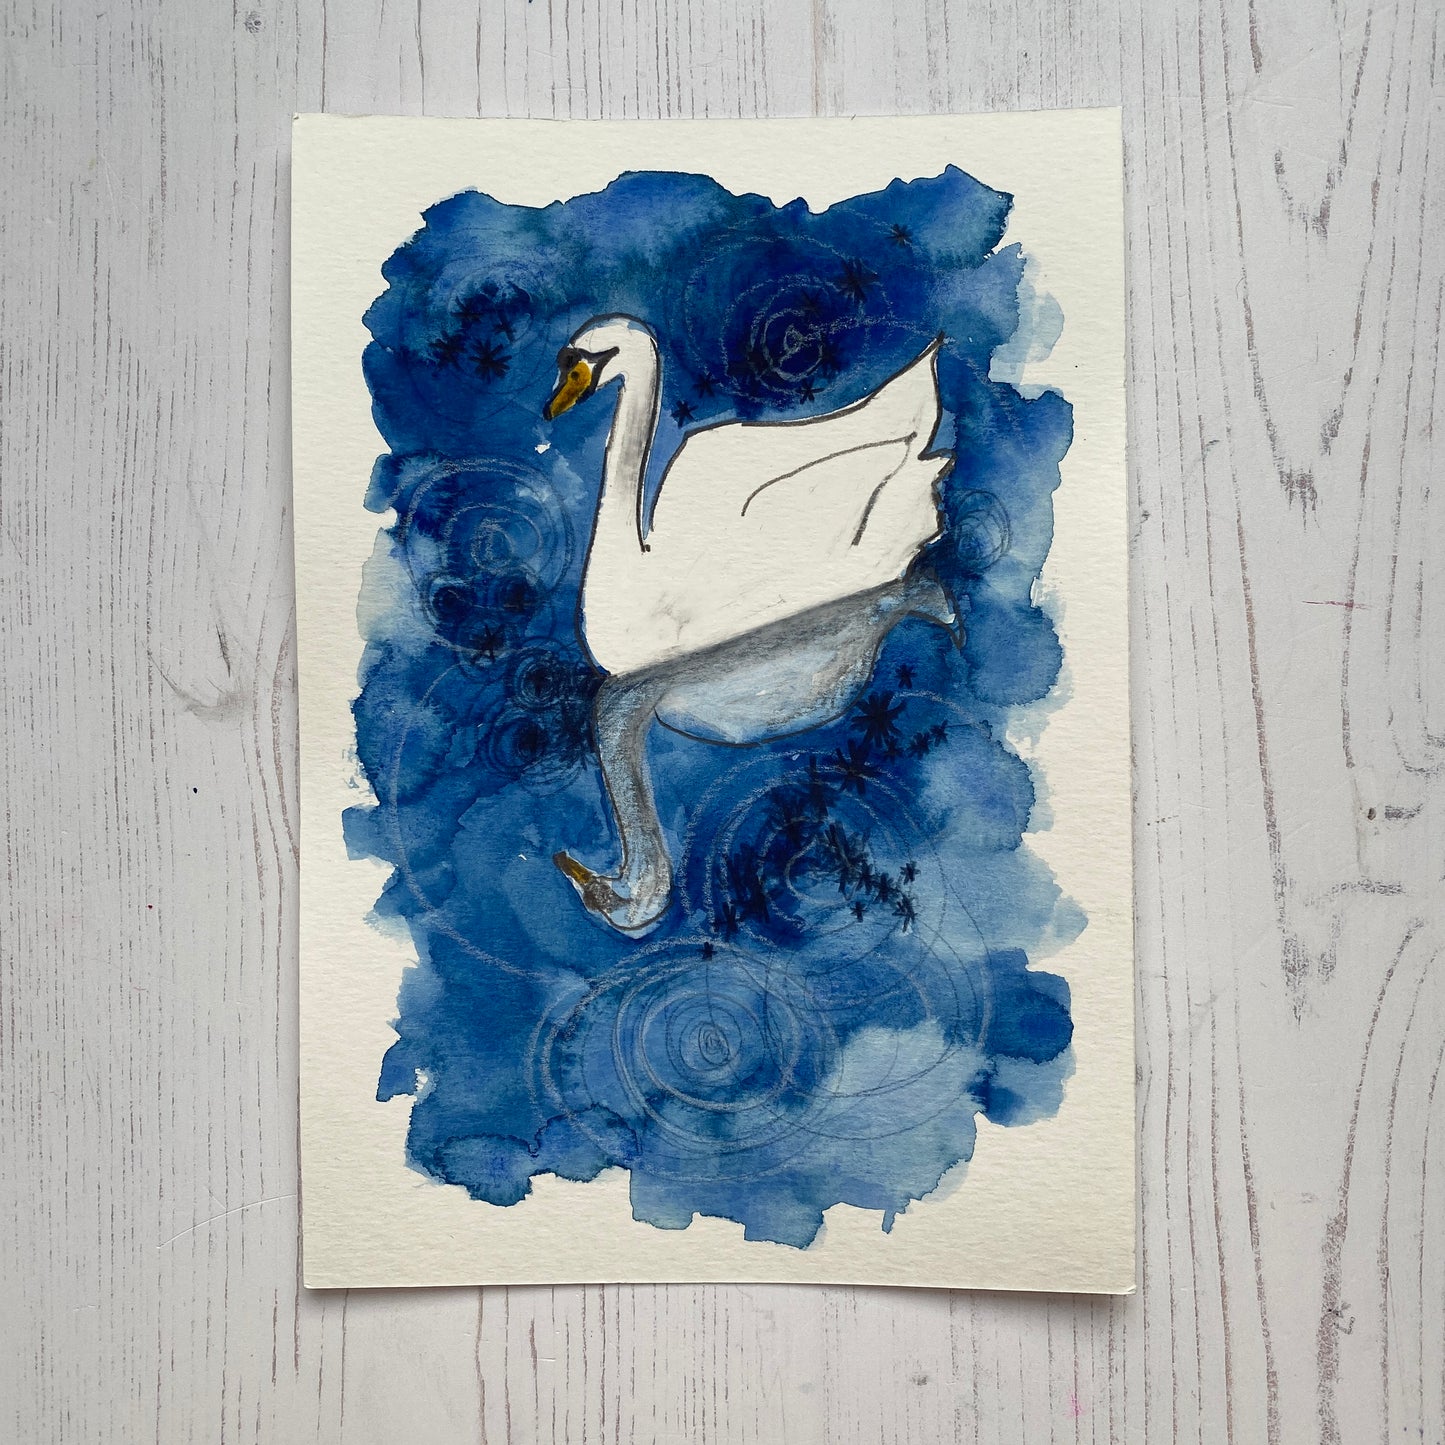 Swan Study 2